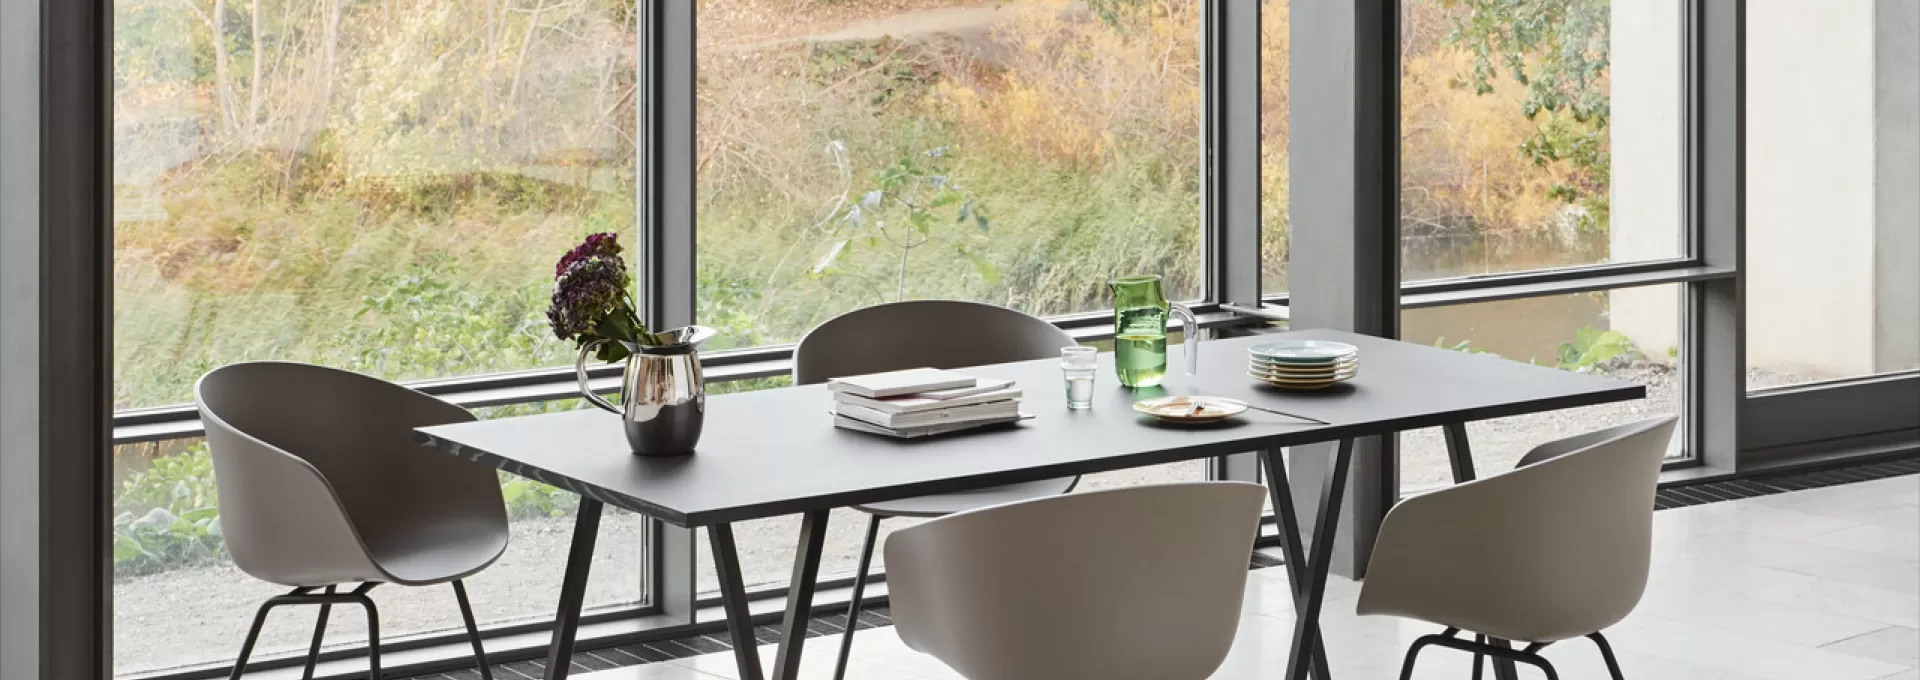 Designoffice | HermanMiller | LOOP STAND TABLE